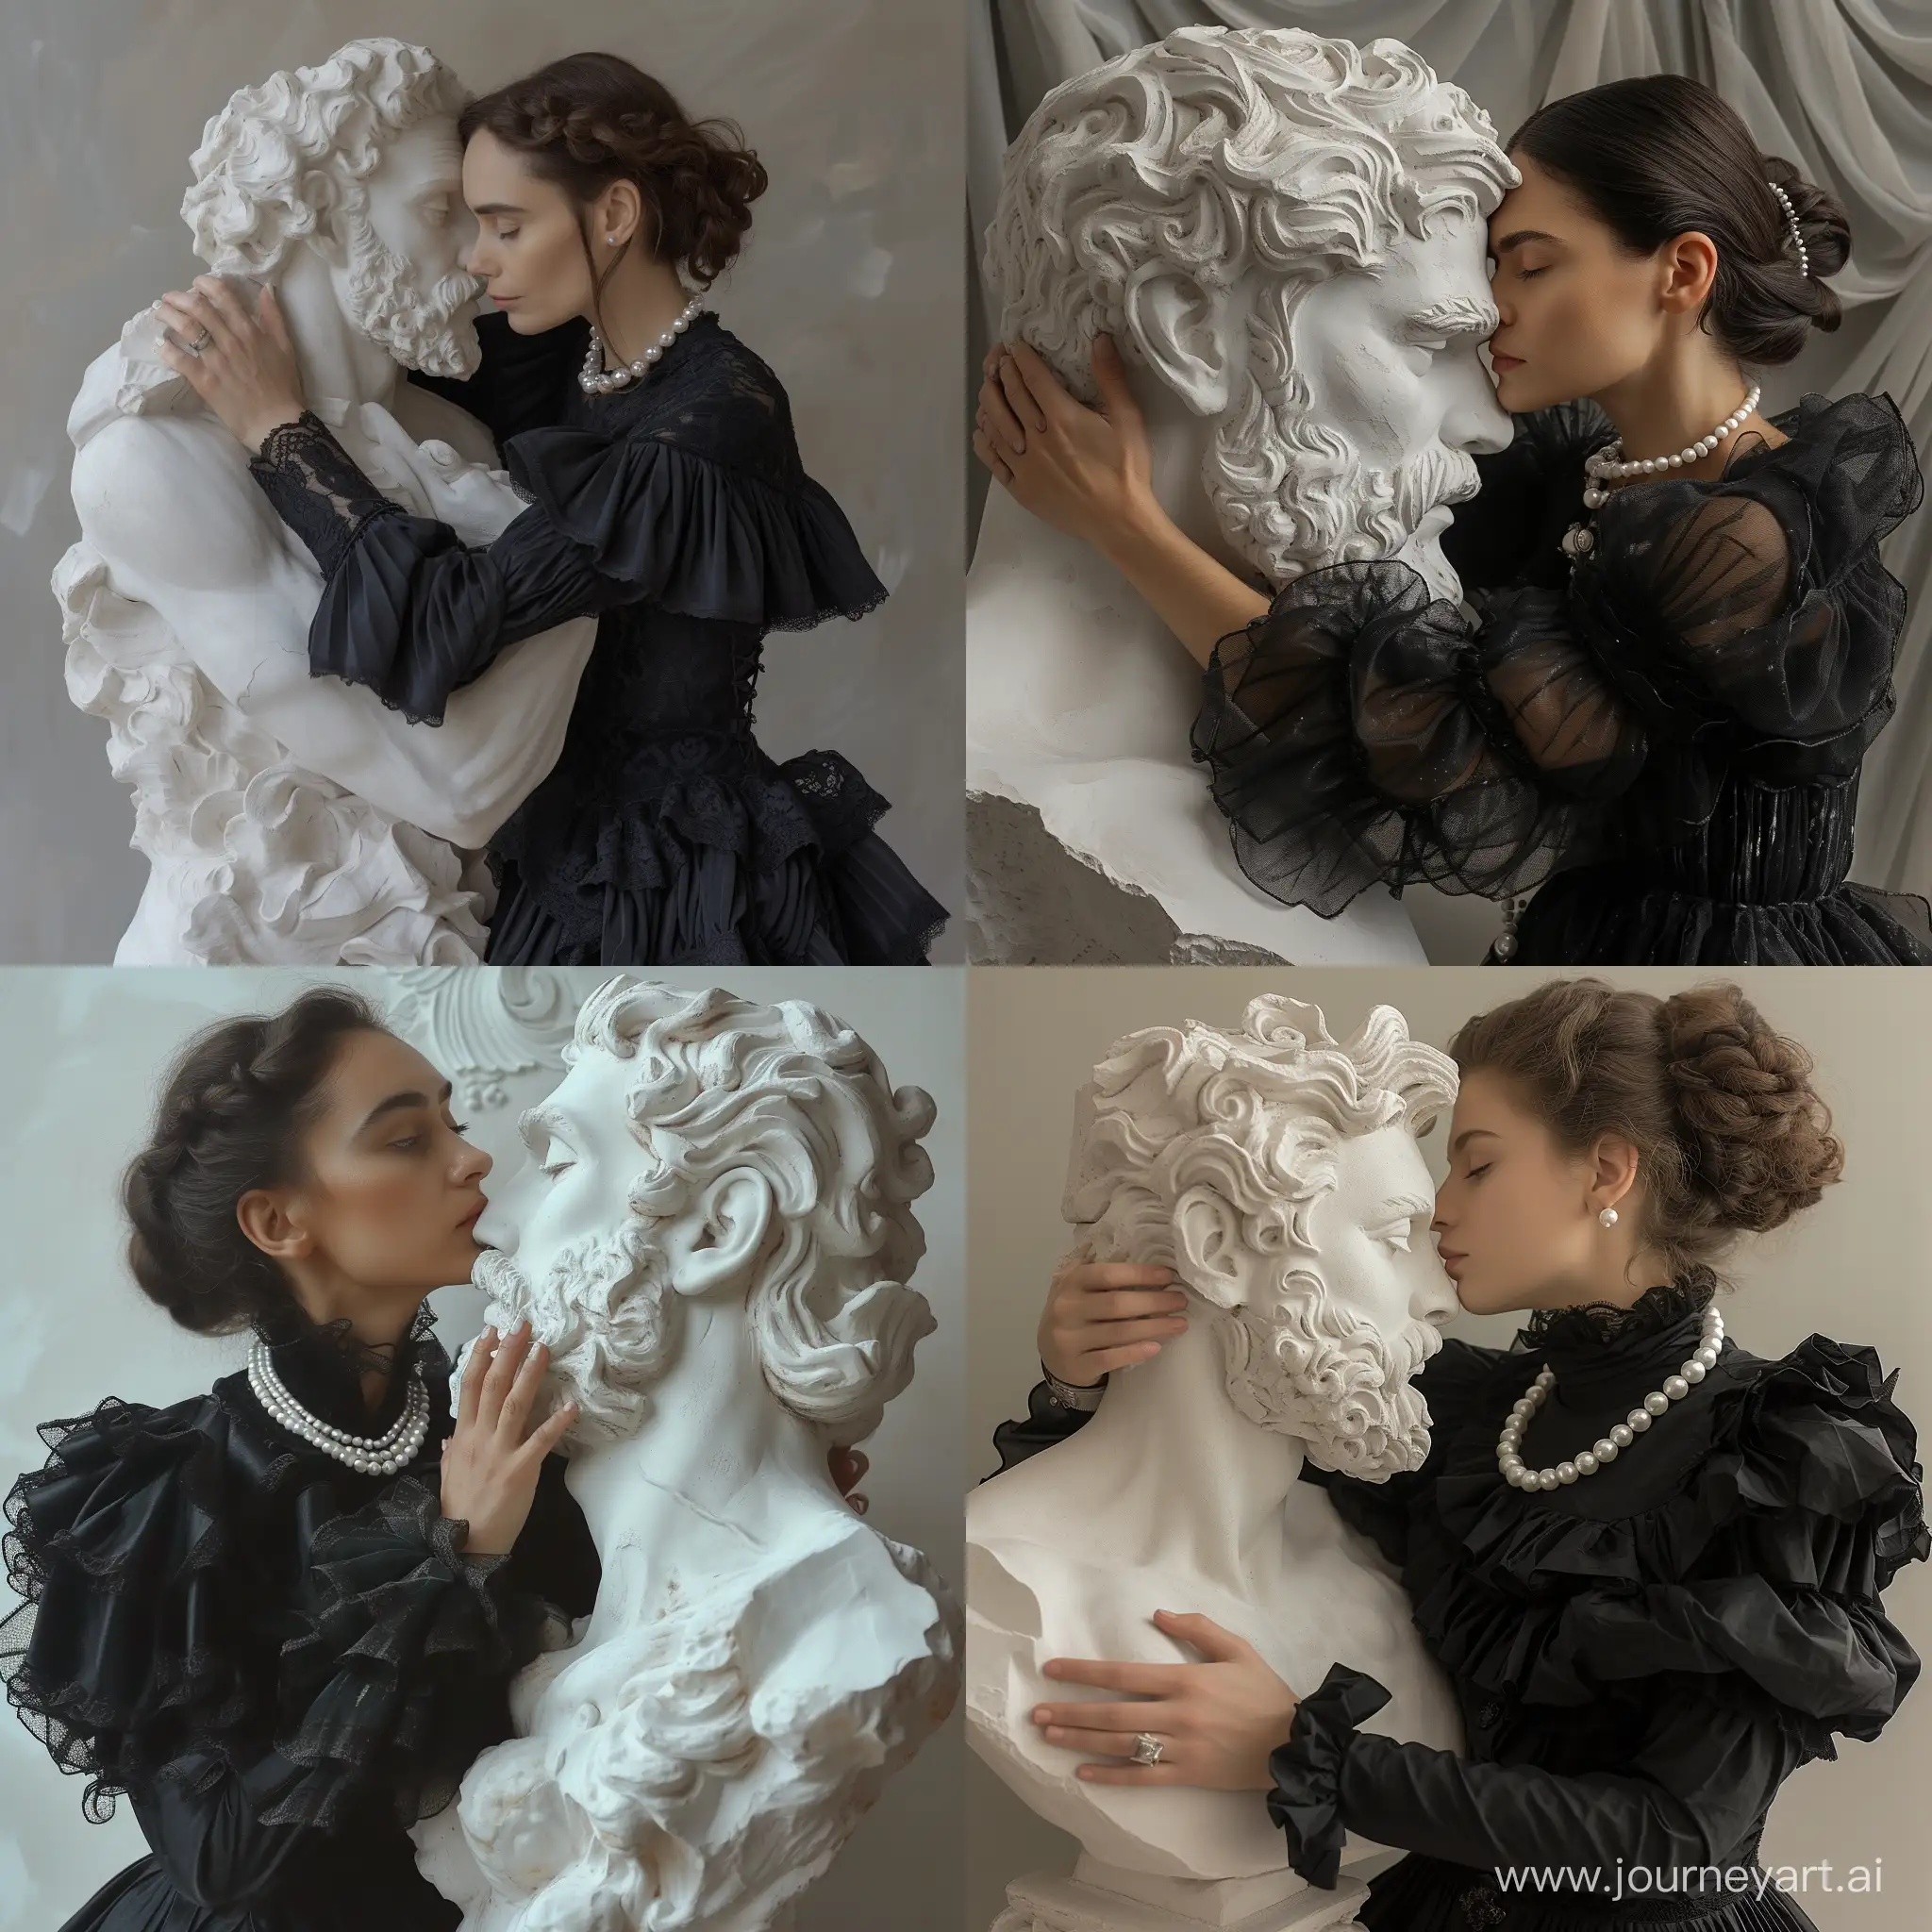 Elegant-Sculptor-Embracing-Surreal-Greek-God-Sculpture-in-Black-Dress